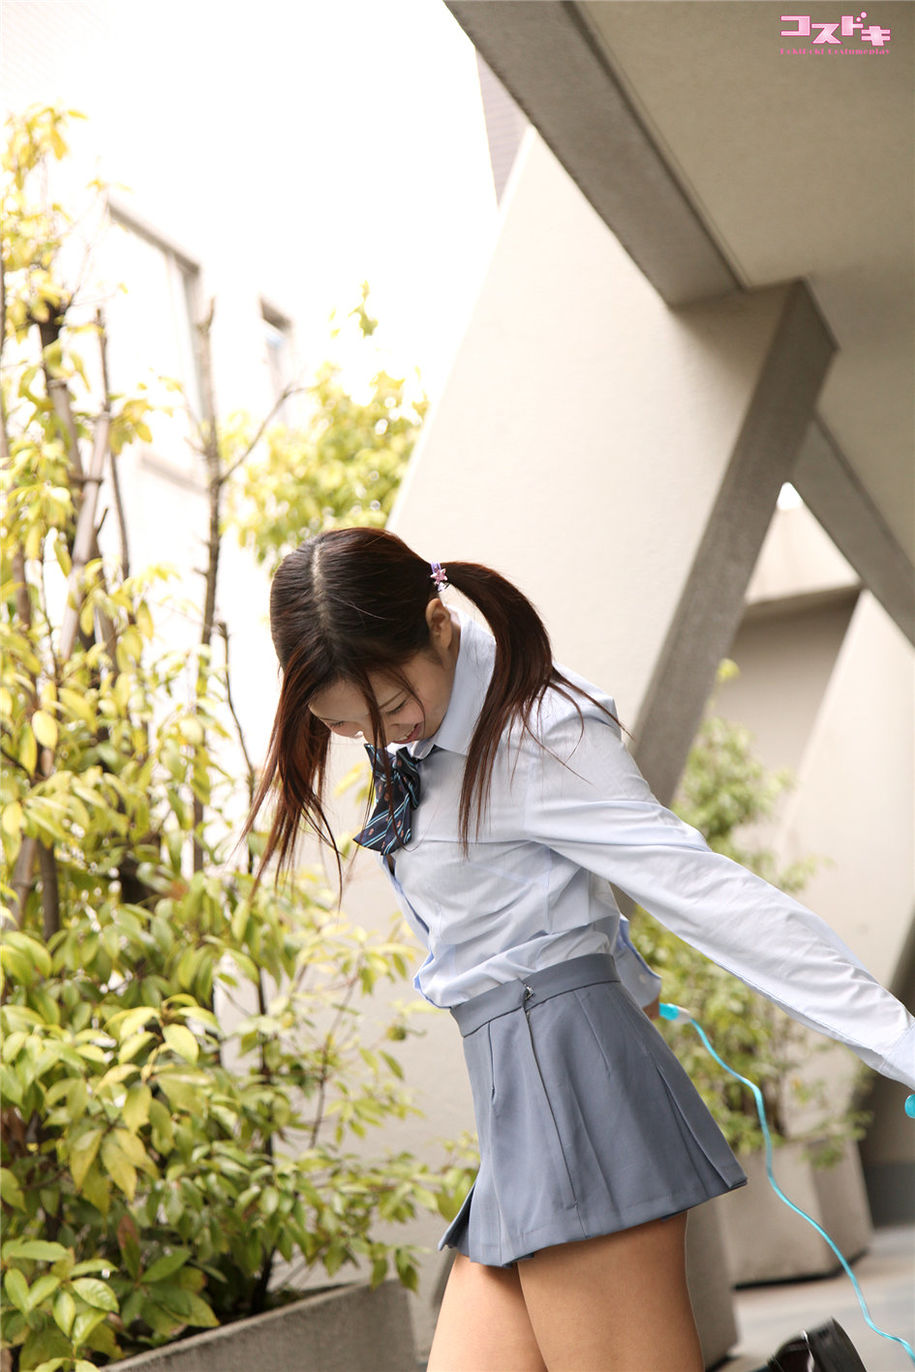 日本美女安達メイ制服私房写真高清图片(第4页)